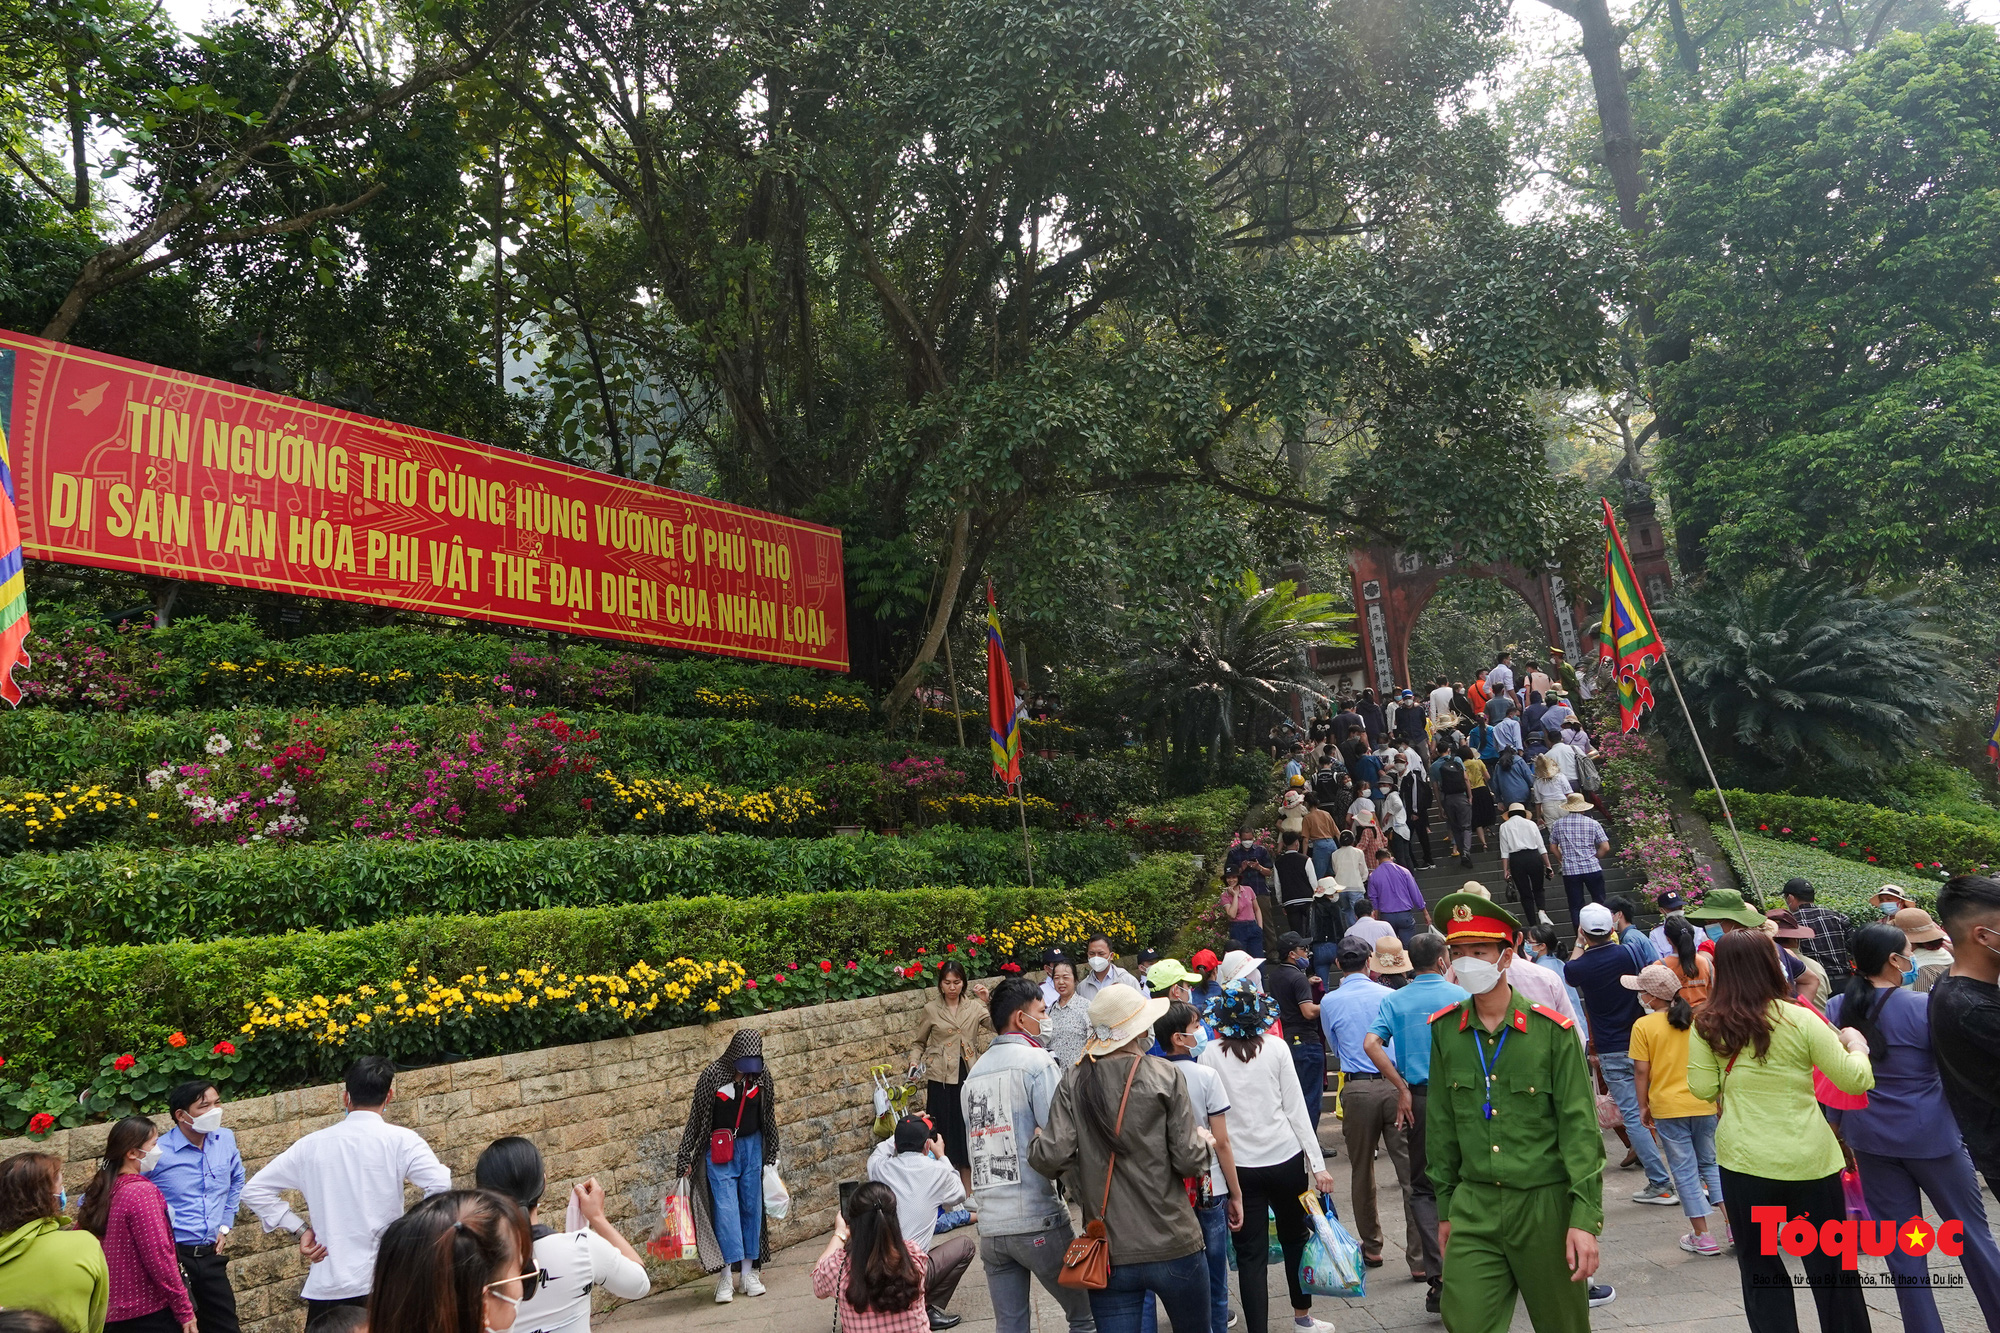 Phú Thọ: Hàng vạn người đổ về khu di tích lịch sử Đền Hùng trước ngày giỗ Tổ - Ảnh 1.